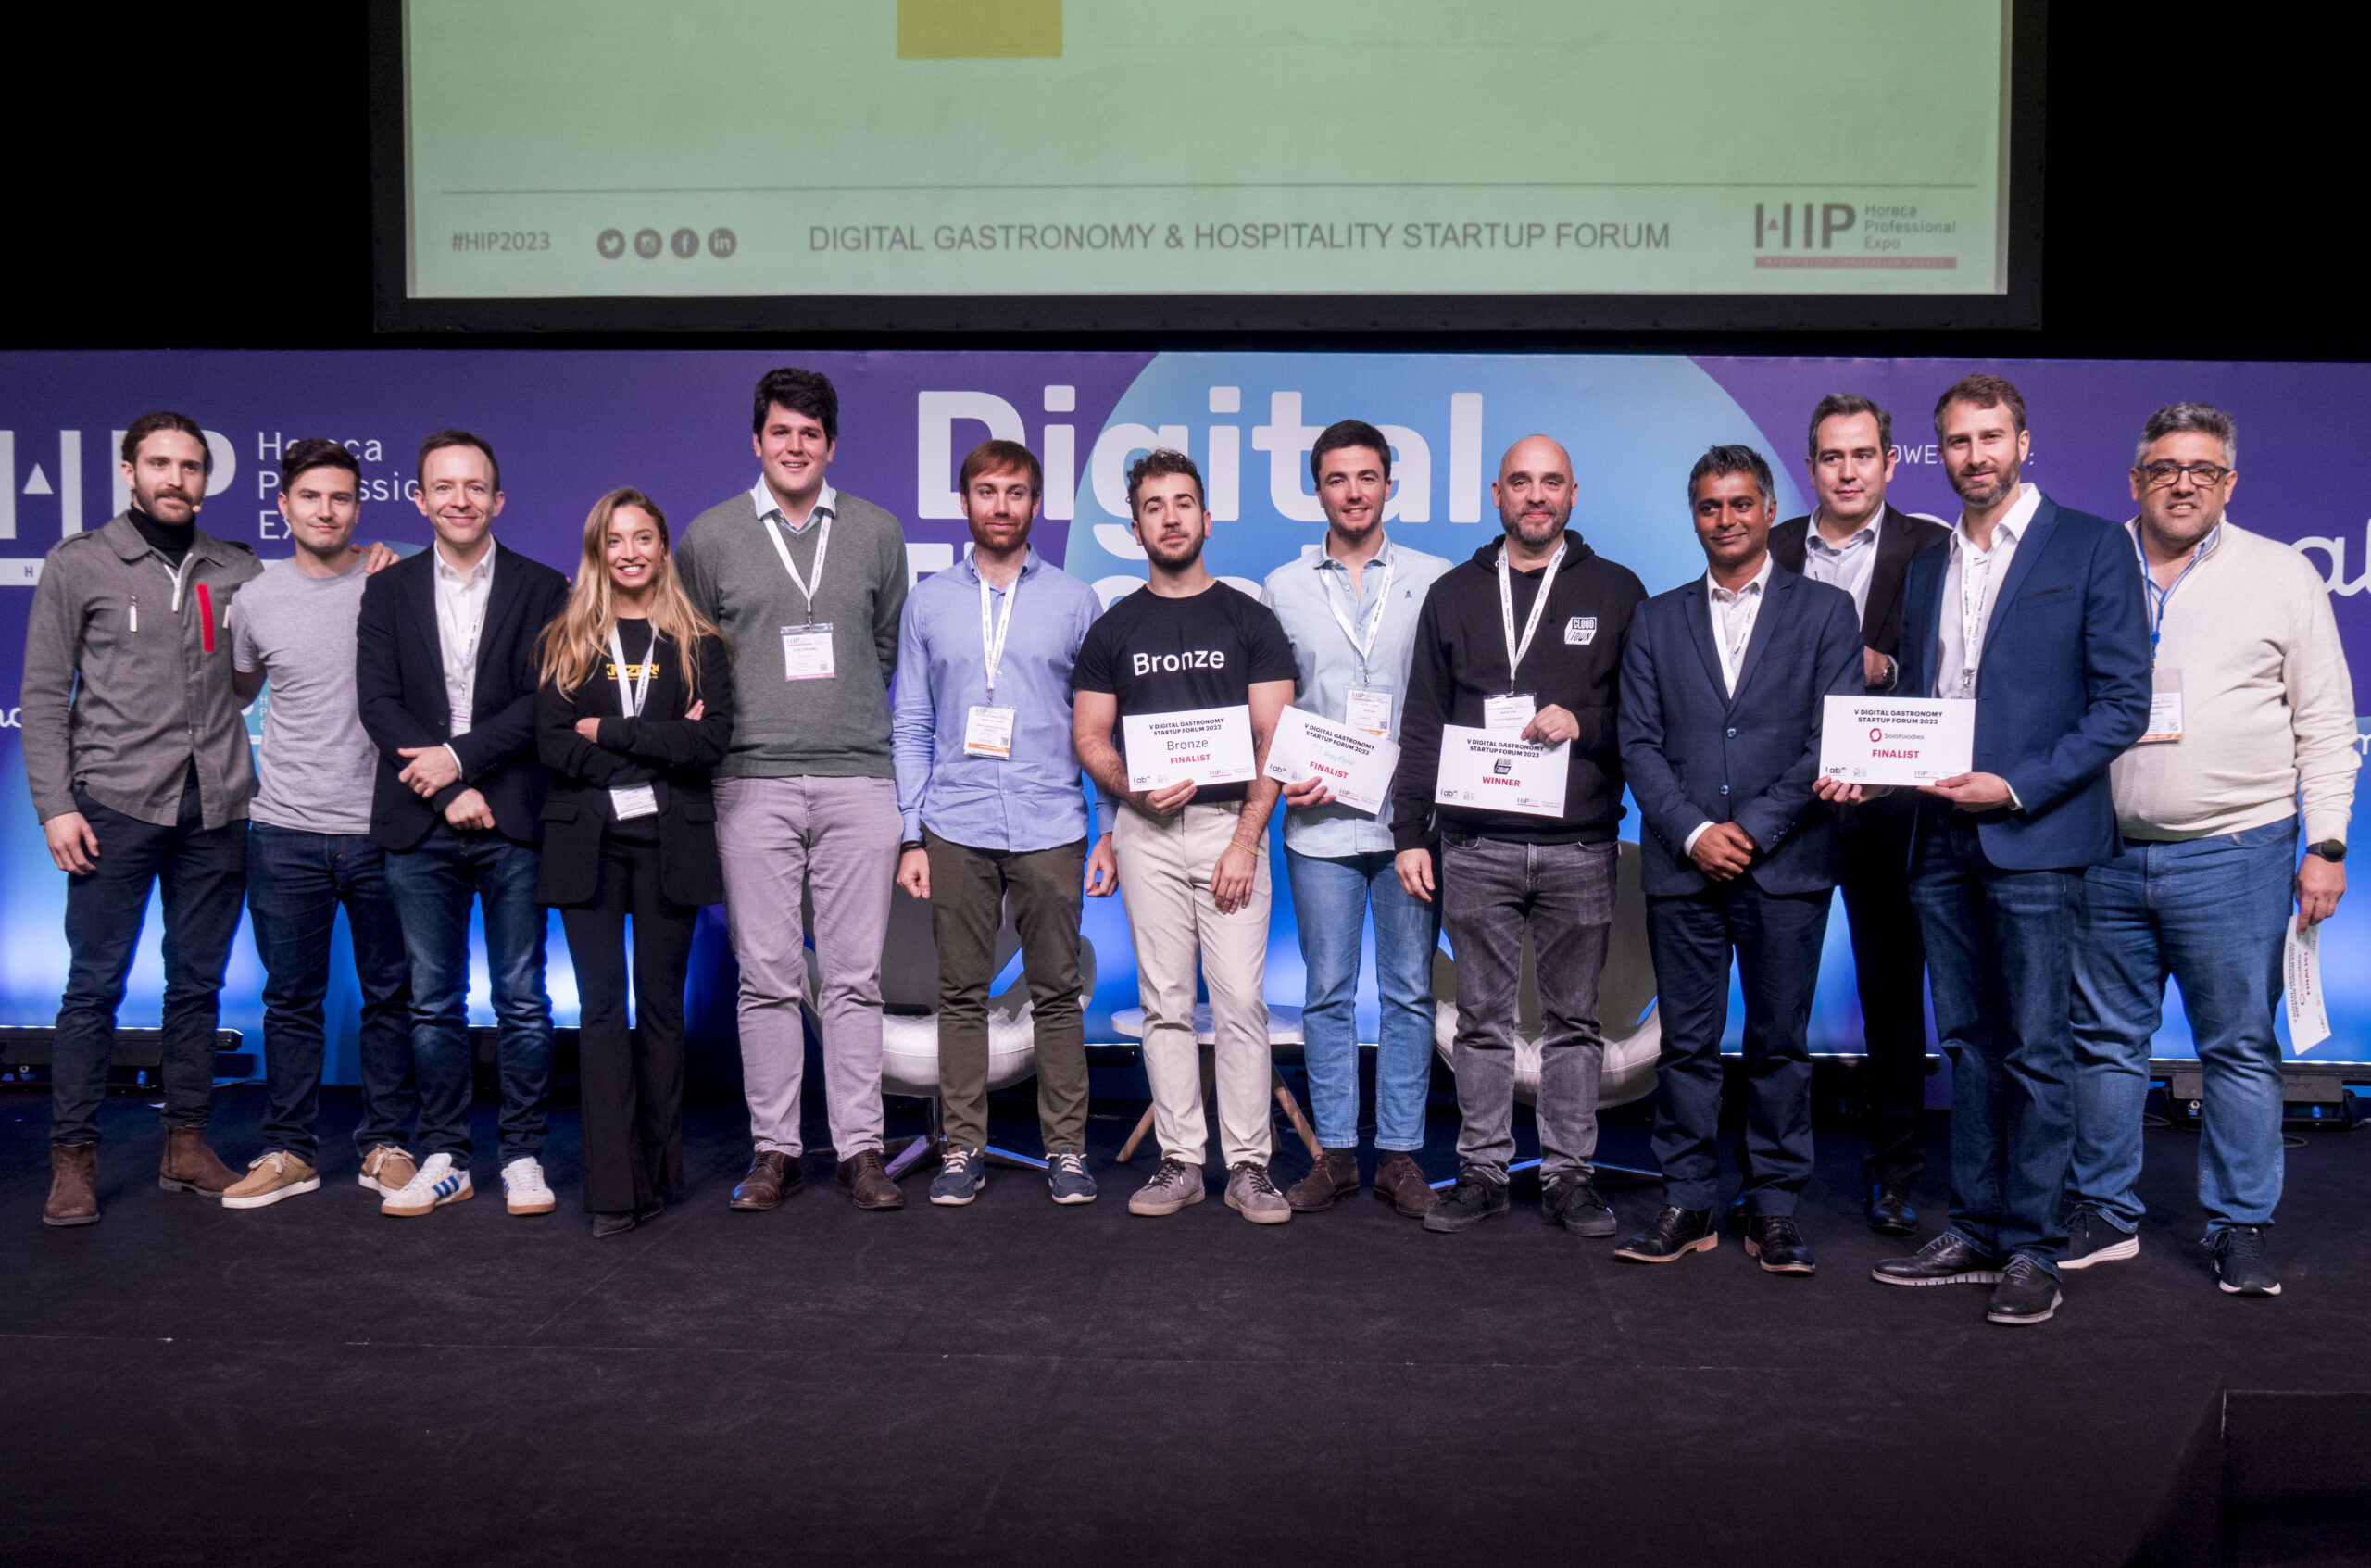 Cloudtown, ganadora de la quinta edición de Digital Gastronomy & Hospitality Startup Forum 